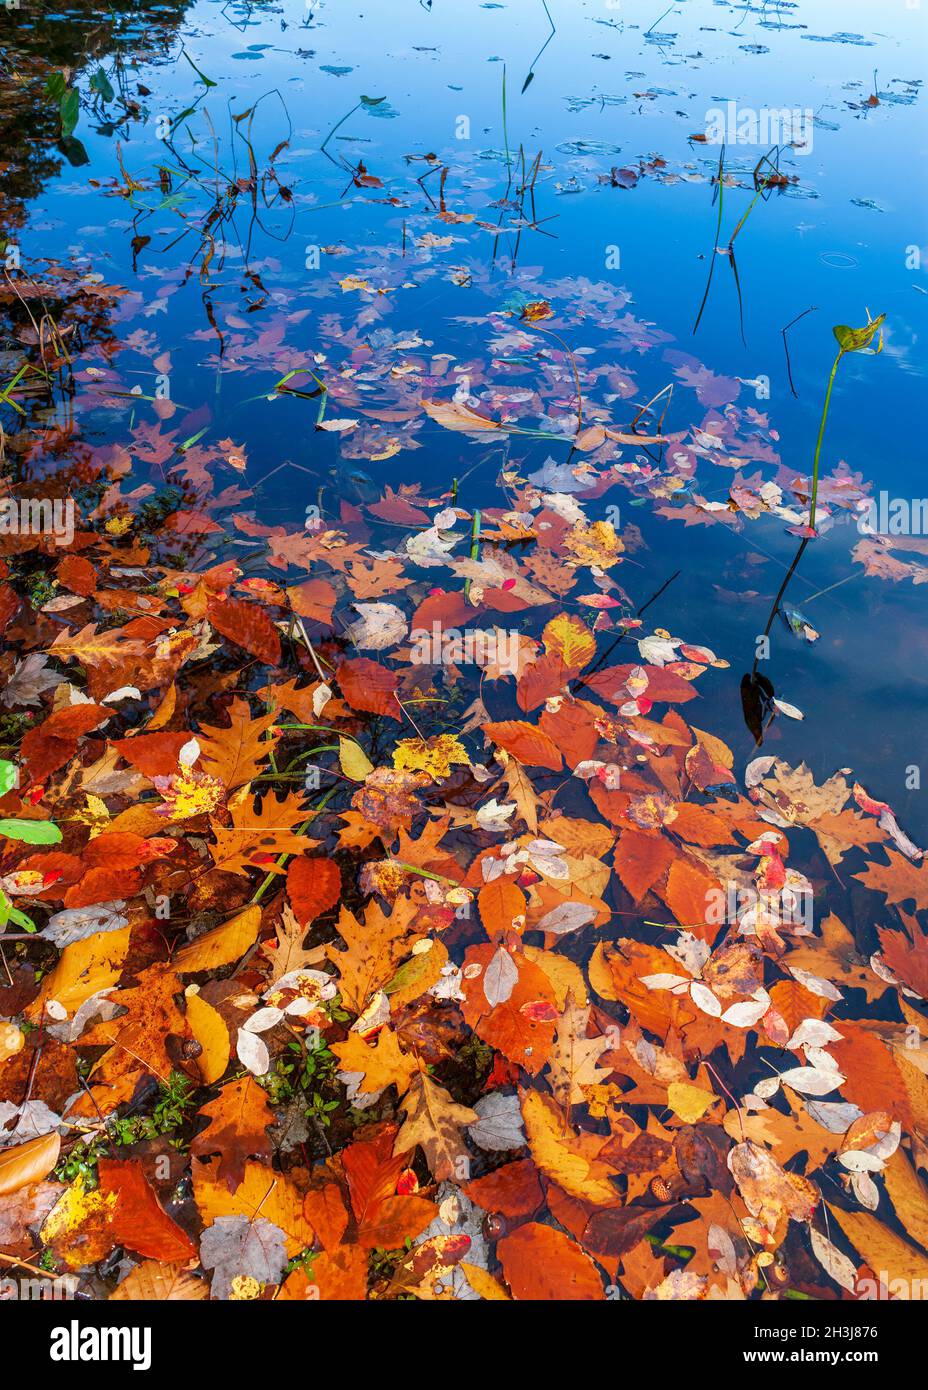 Bunte Herbstblätter schwimmen auf dem ruhigen Wasser eines Sees, am Ufer. Eames Pond, Moore State Park, Paxton, MA, USA Stockfoto